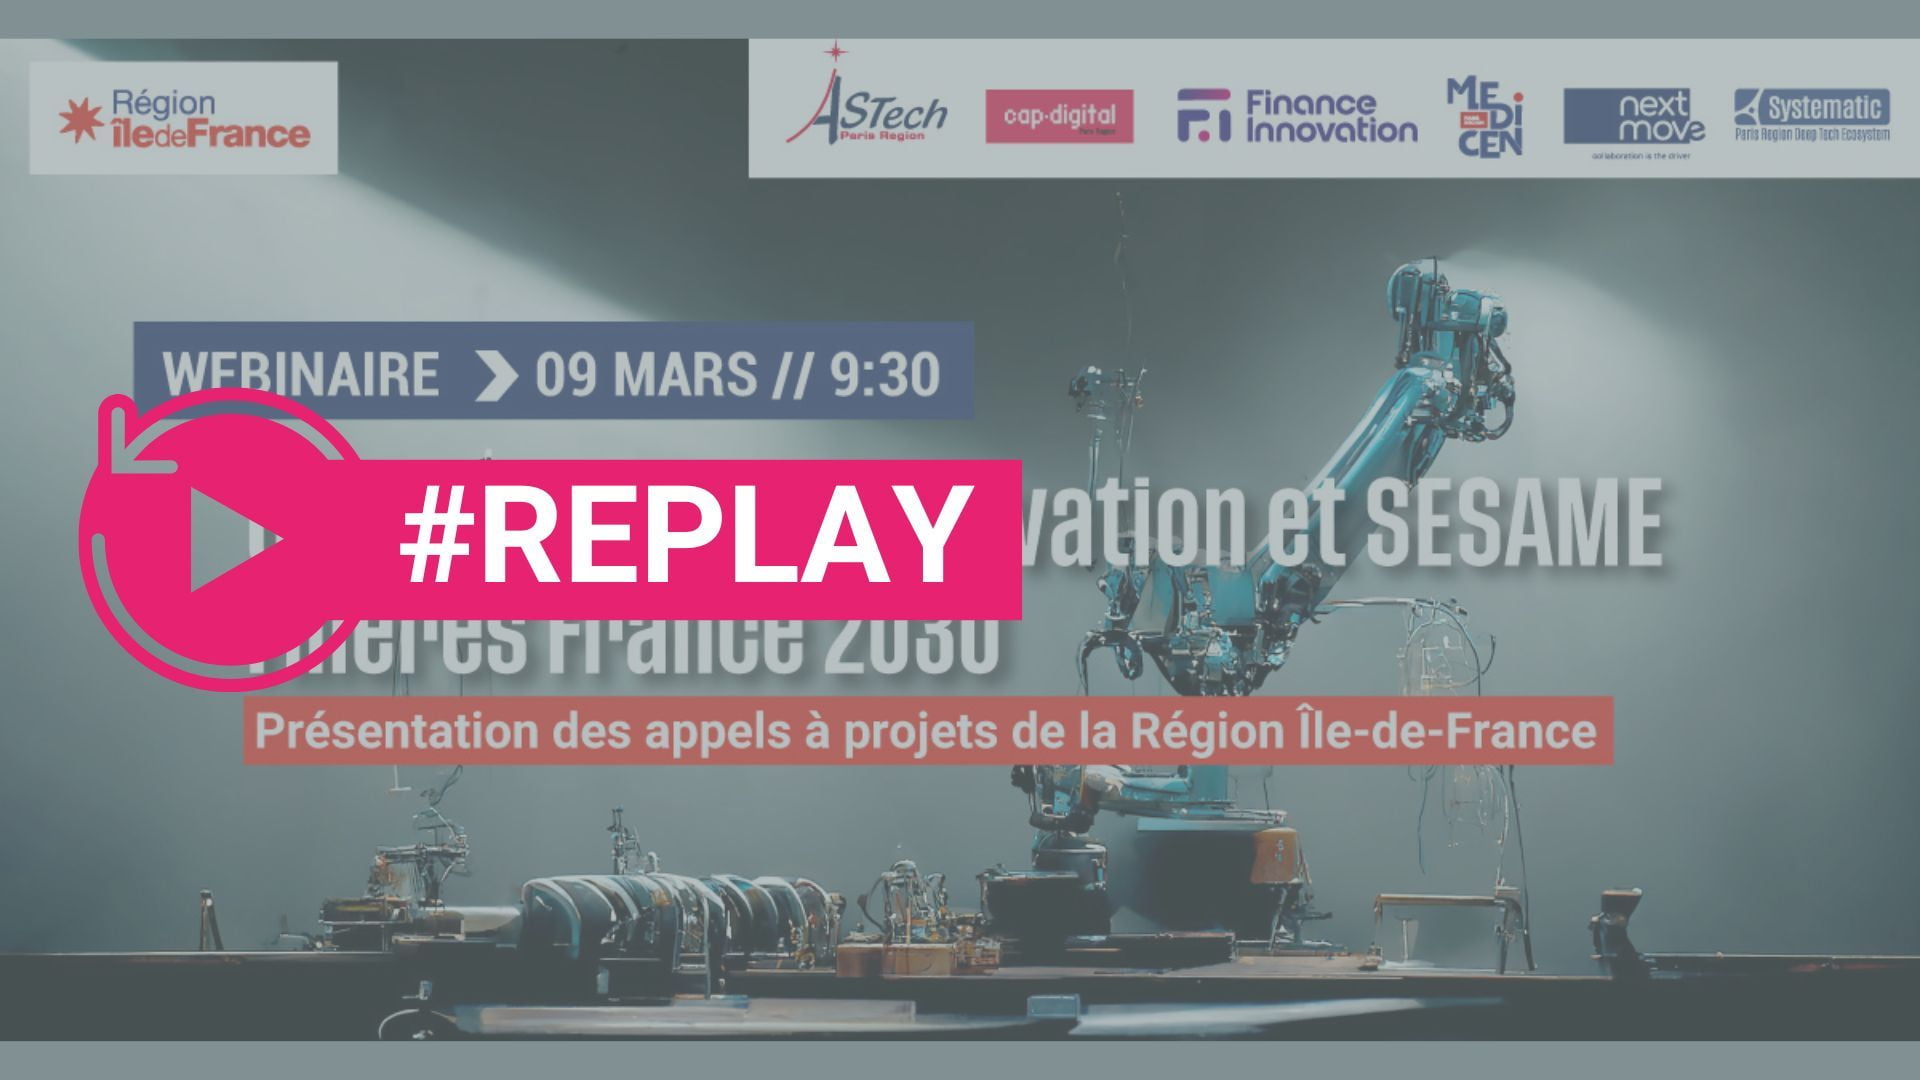 #Replay Webinar - Grands Lieux d'Innovation & SESAME Filière France 2030 - Présentation des appels à projets de la Région Île-de-France